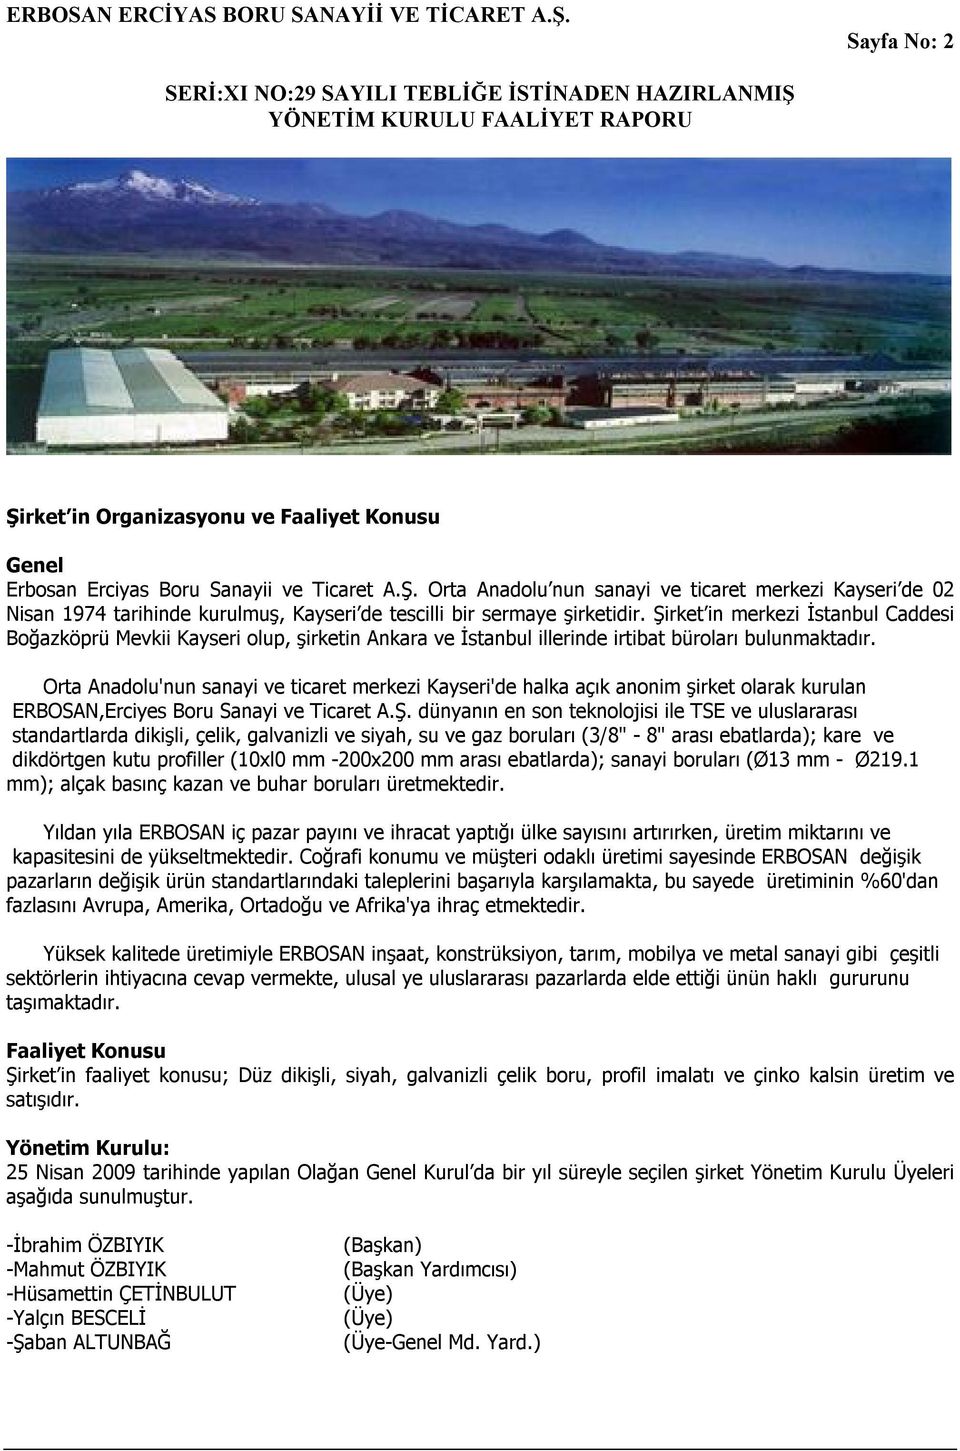 Orta Anadolu'nun sanayi ve ticaret merkezi Kayseri'de halka açık anonim şirket olarak kurulan ERBOSAN,Erciyes Boru Sanayi ve Ticaret A.Ş.